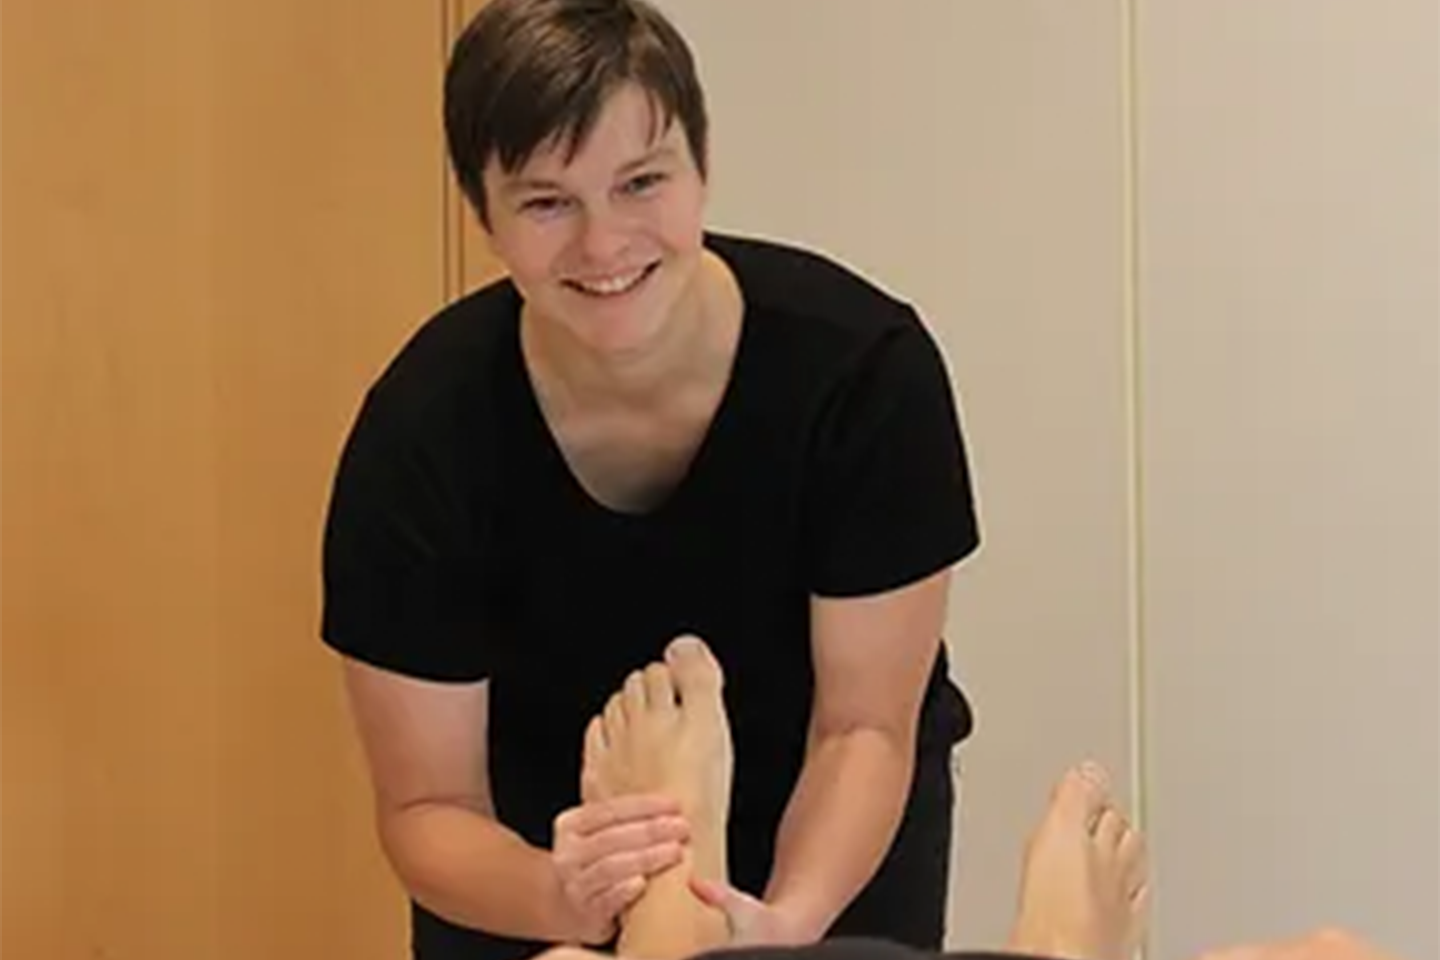 60 minutters førstegangsbehandling for osteopati hos Bernadette Pohl (1 av 4) (2 av 4)